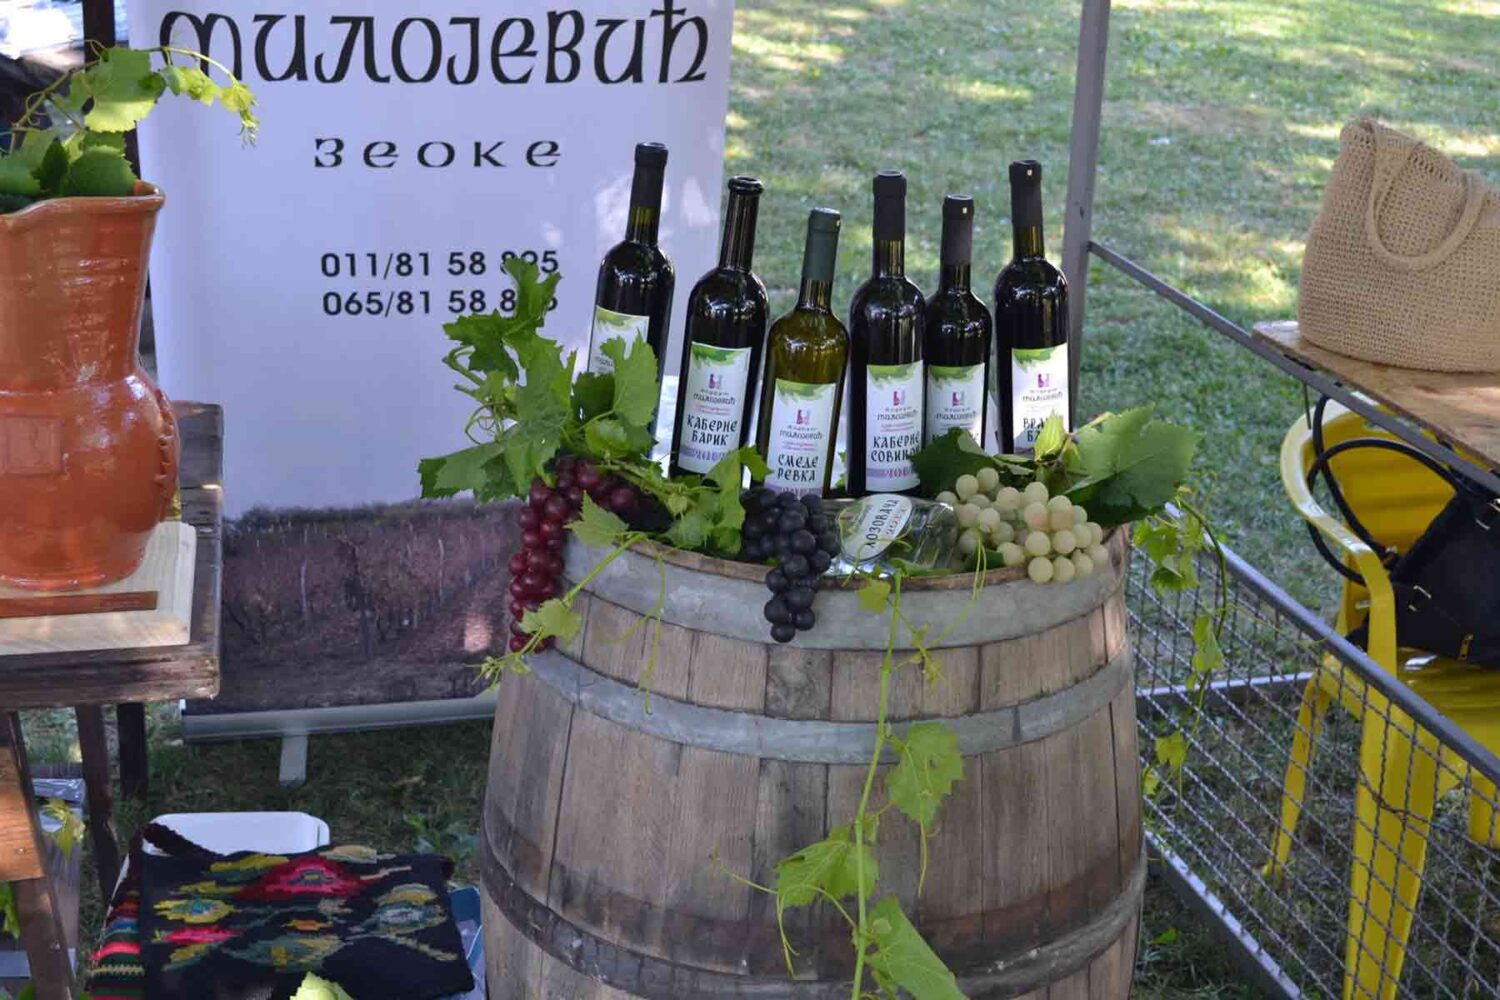 Beogradske vinarije